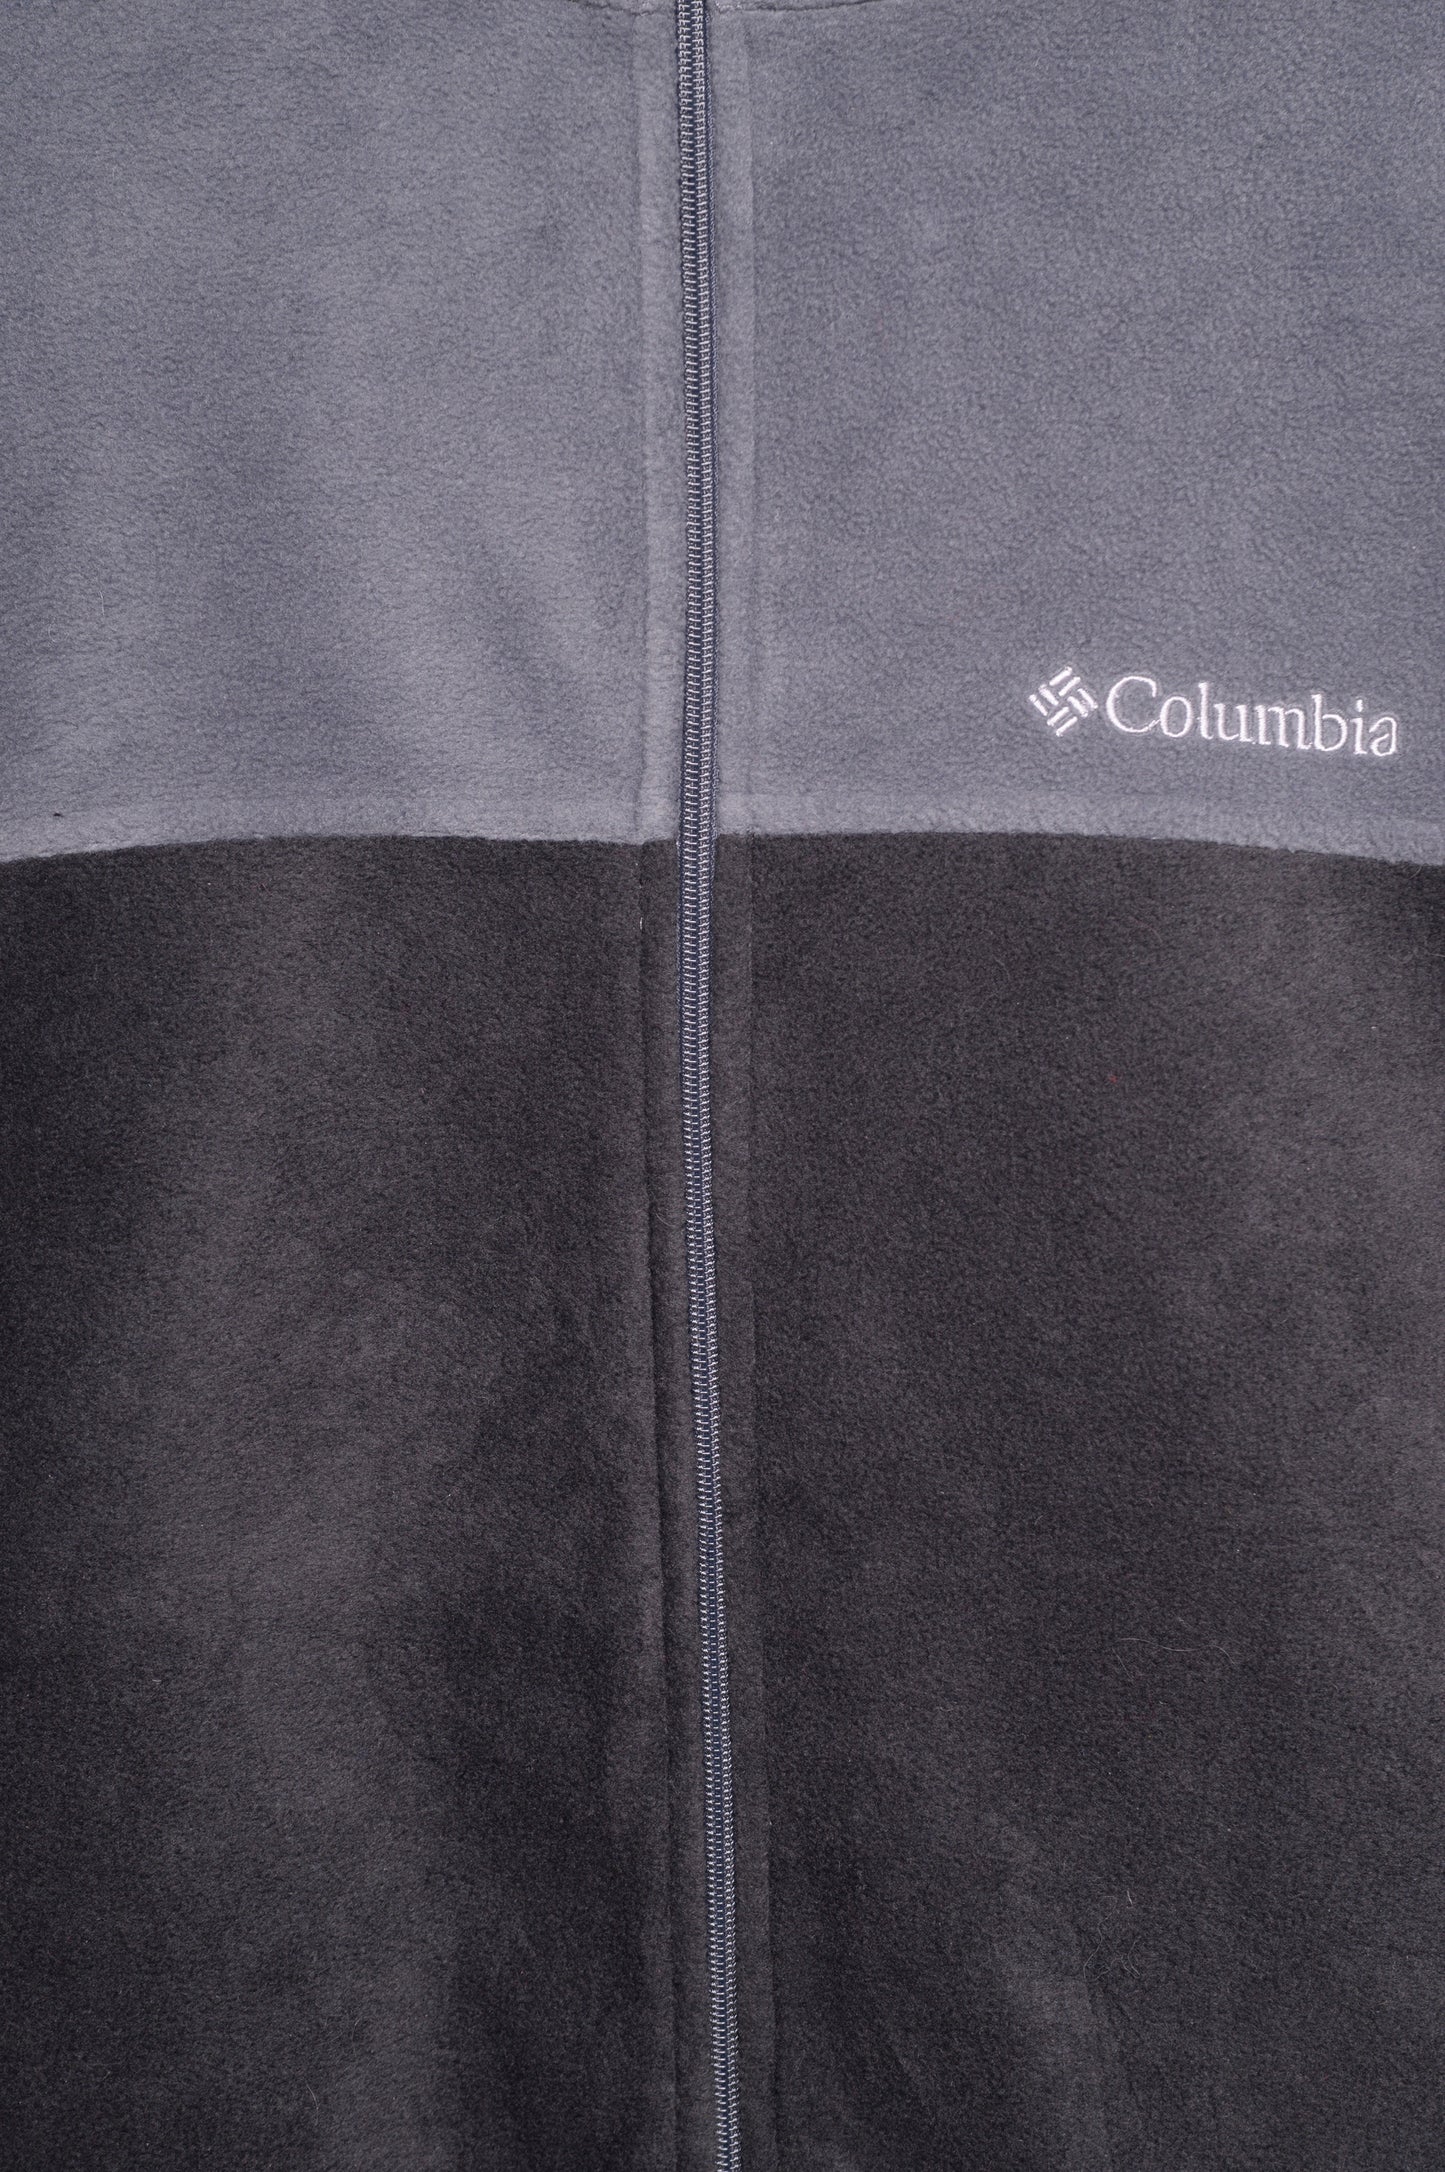 Columbia Colorblock Fleece Sweatshirt